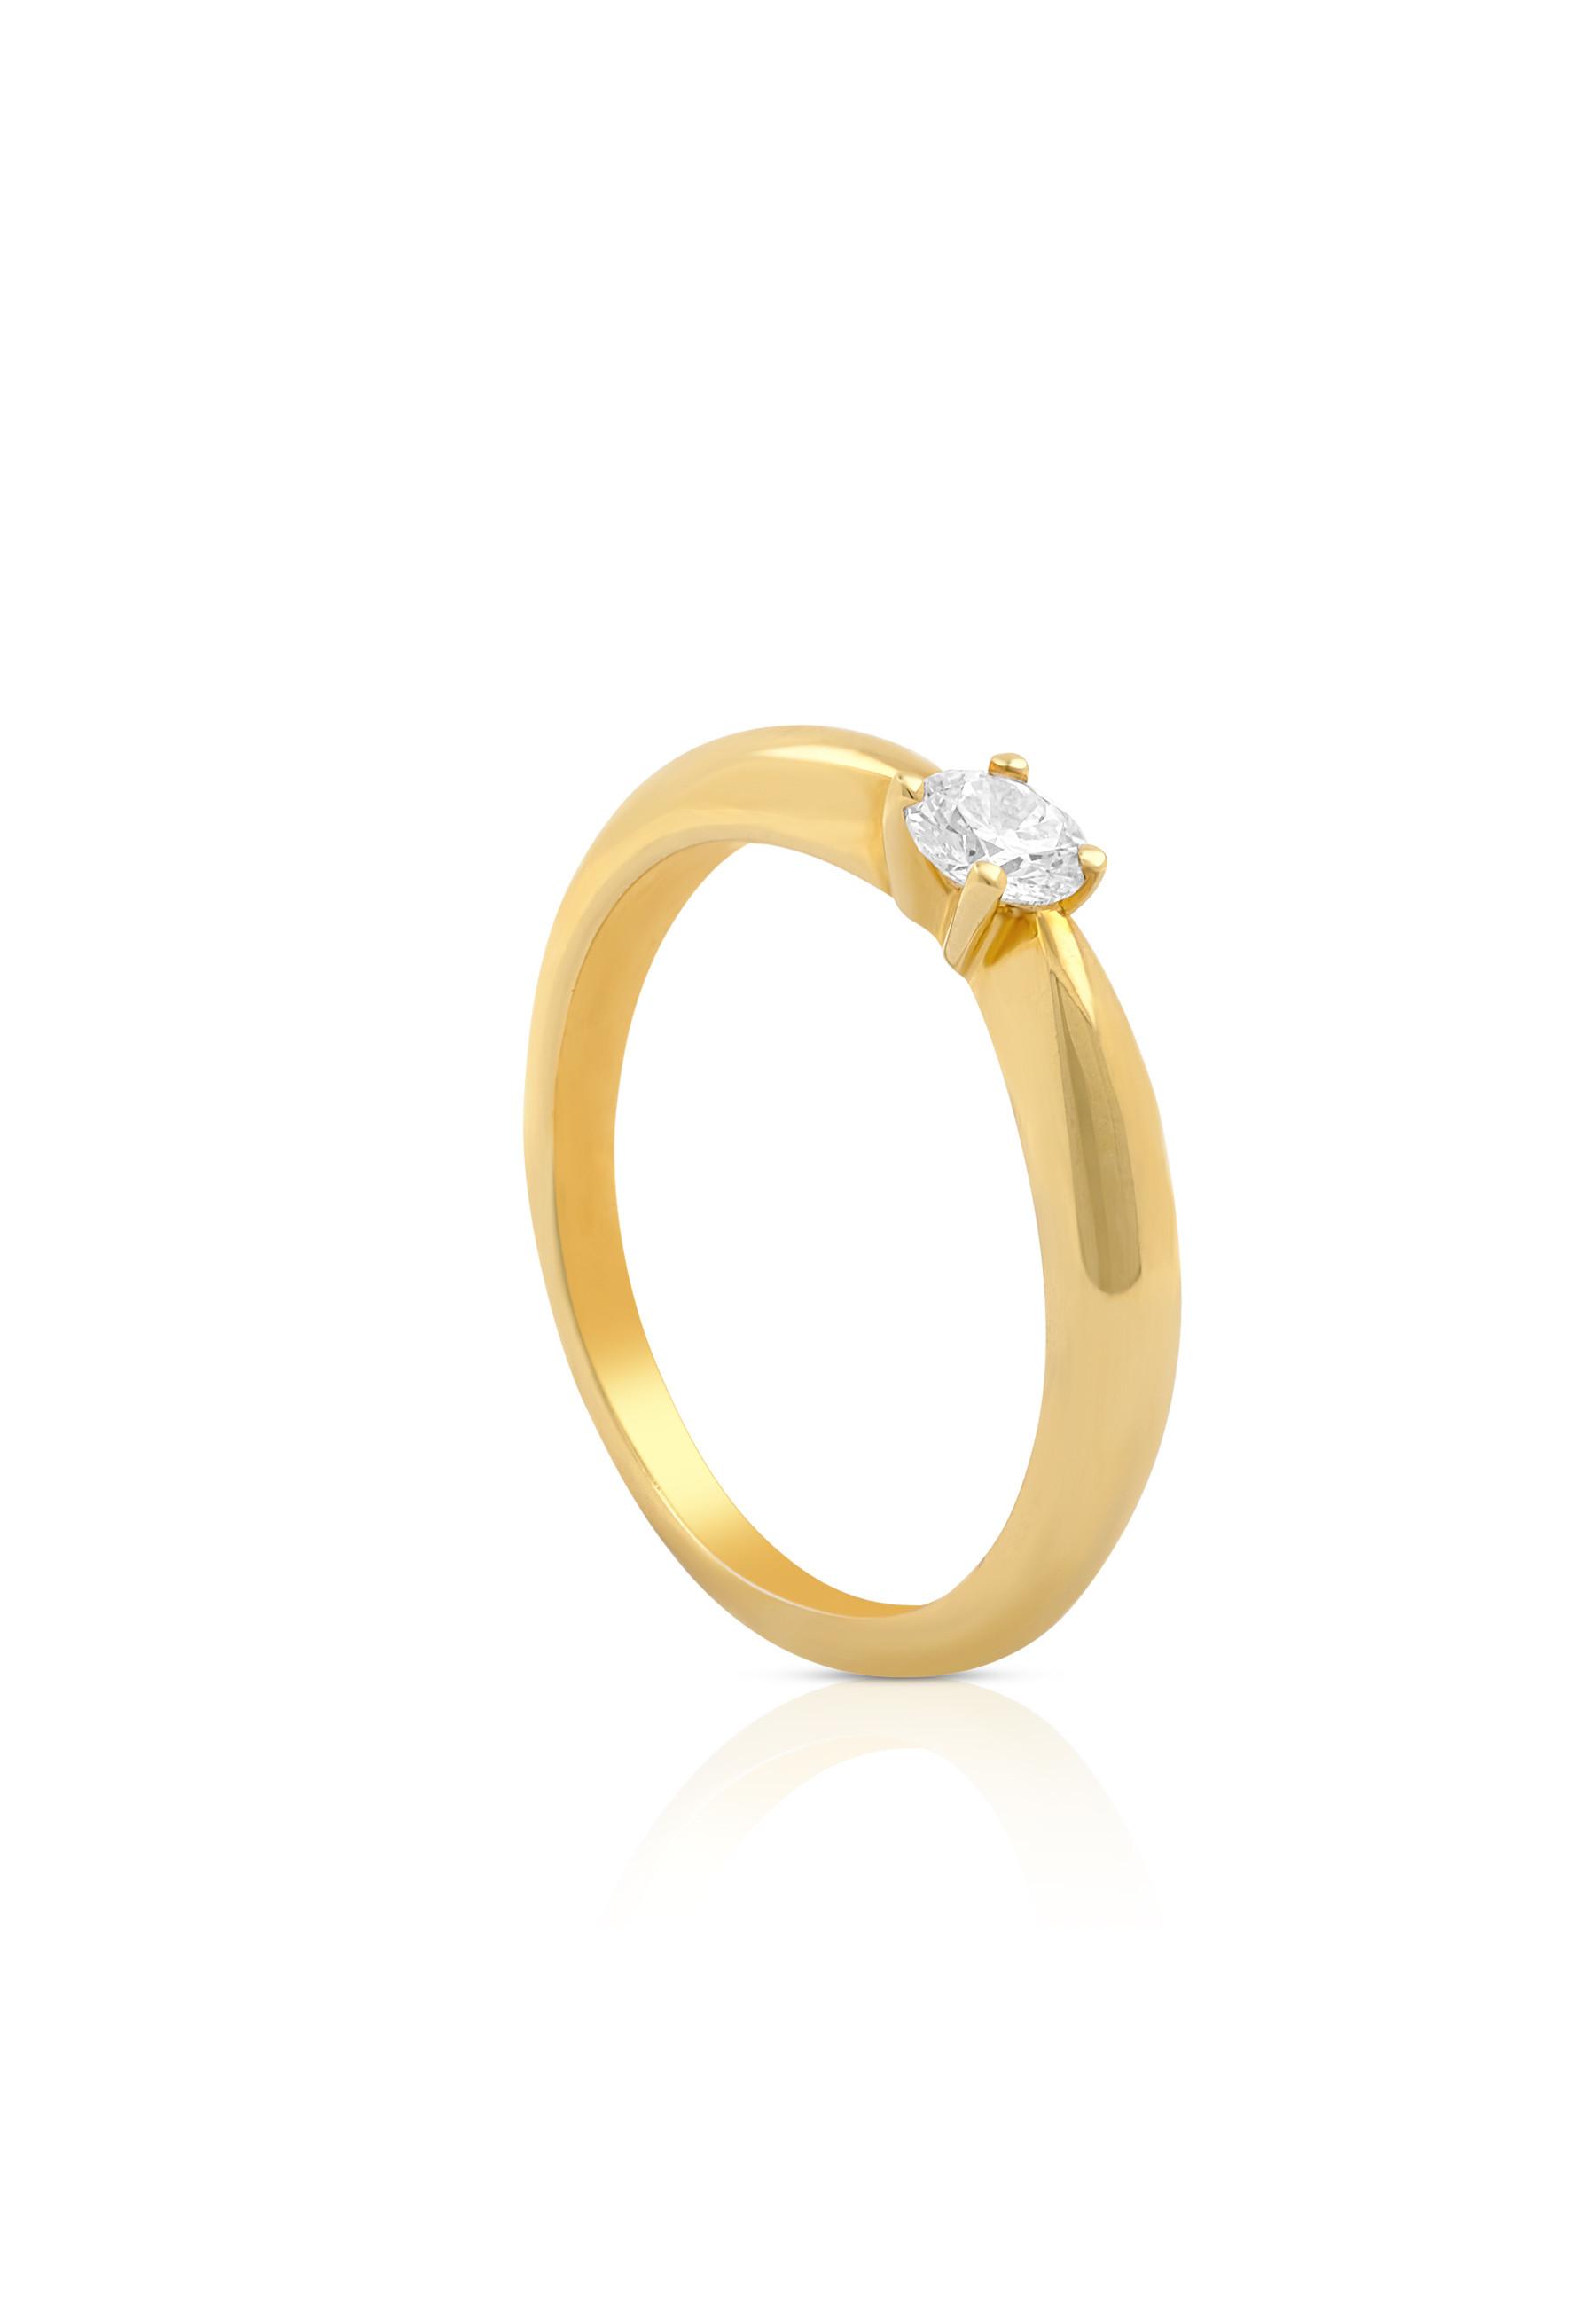 MUAU Schmuck  Solitaire Ring Diamant 0.25ct. Gelbgold 750 